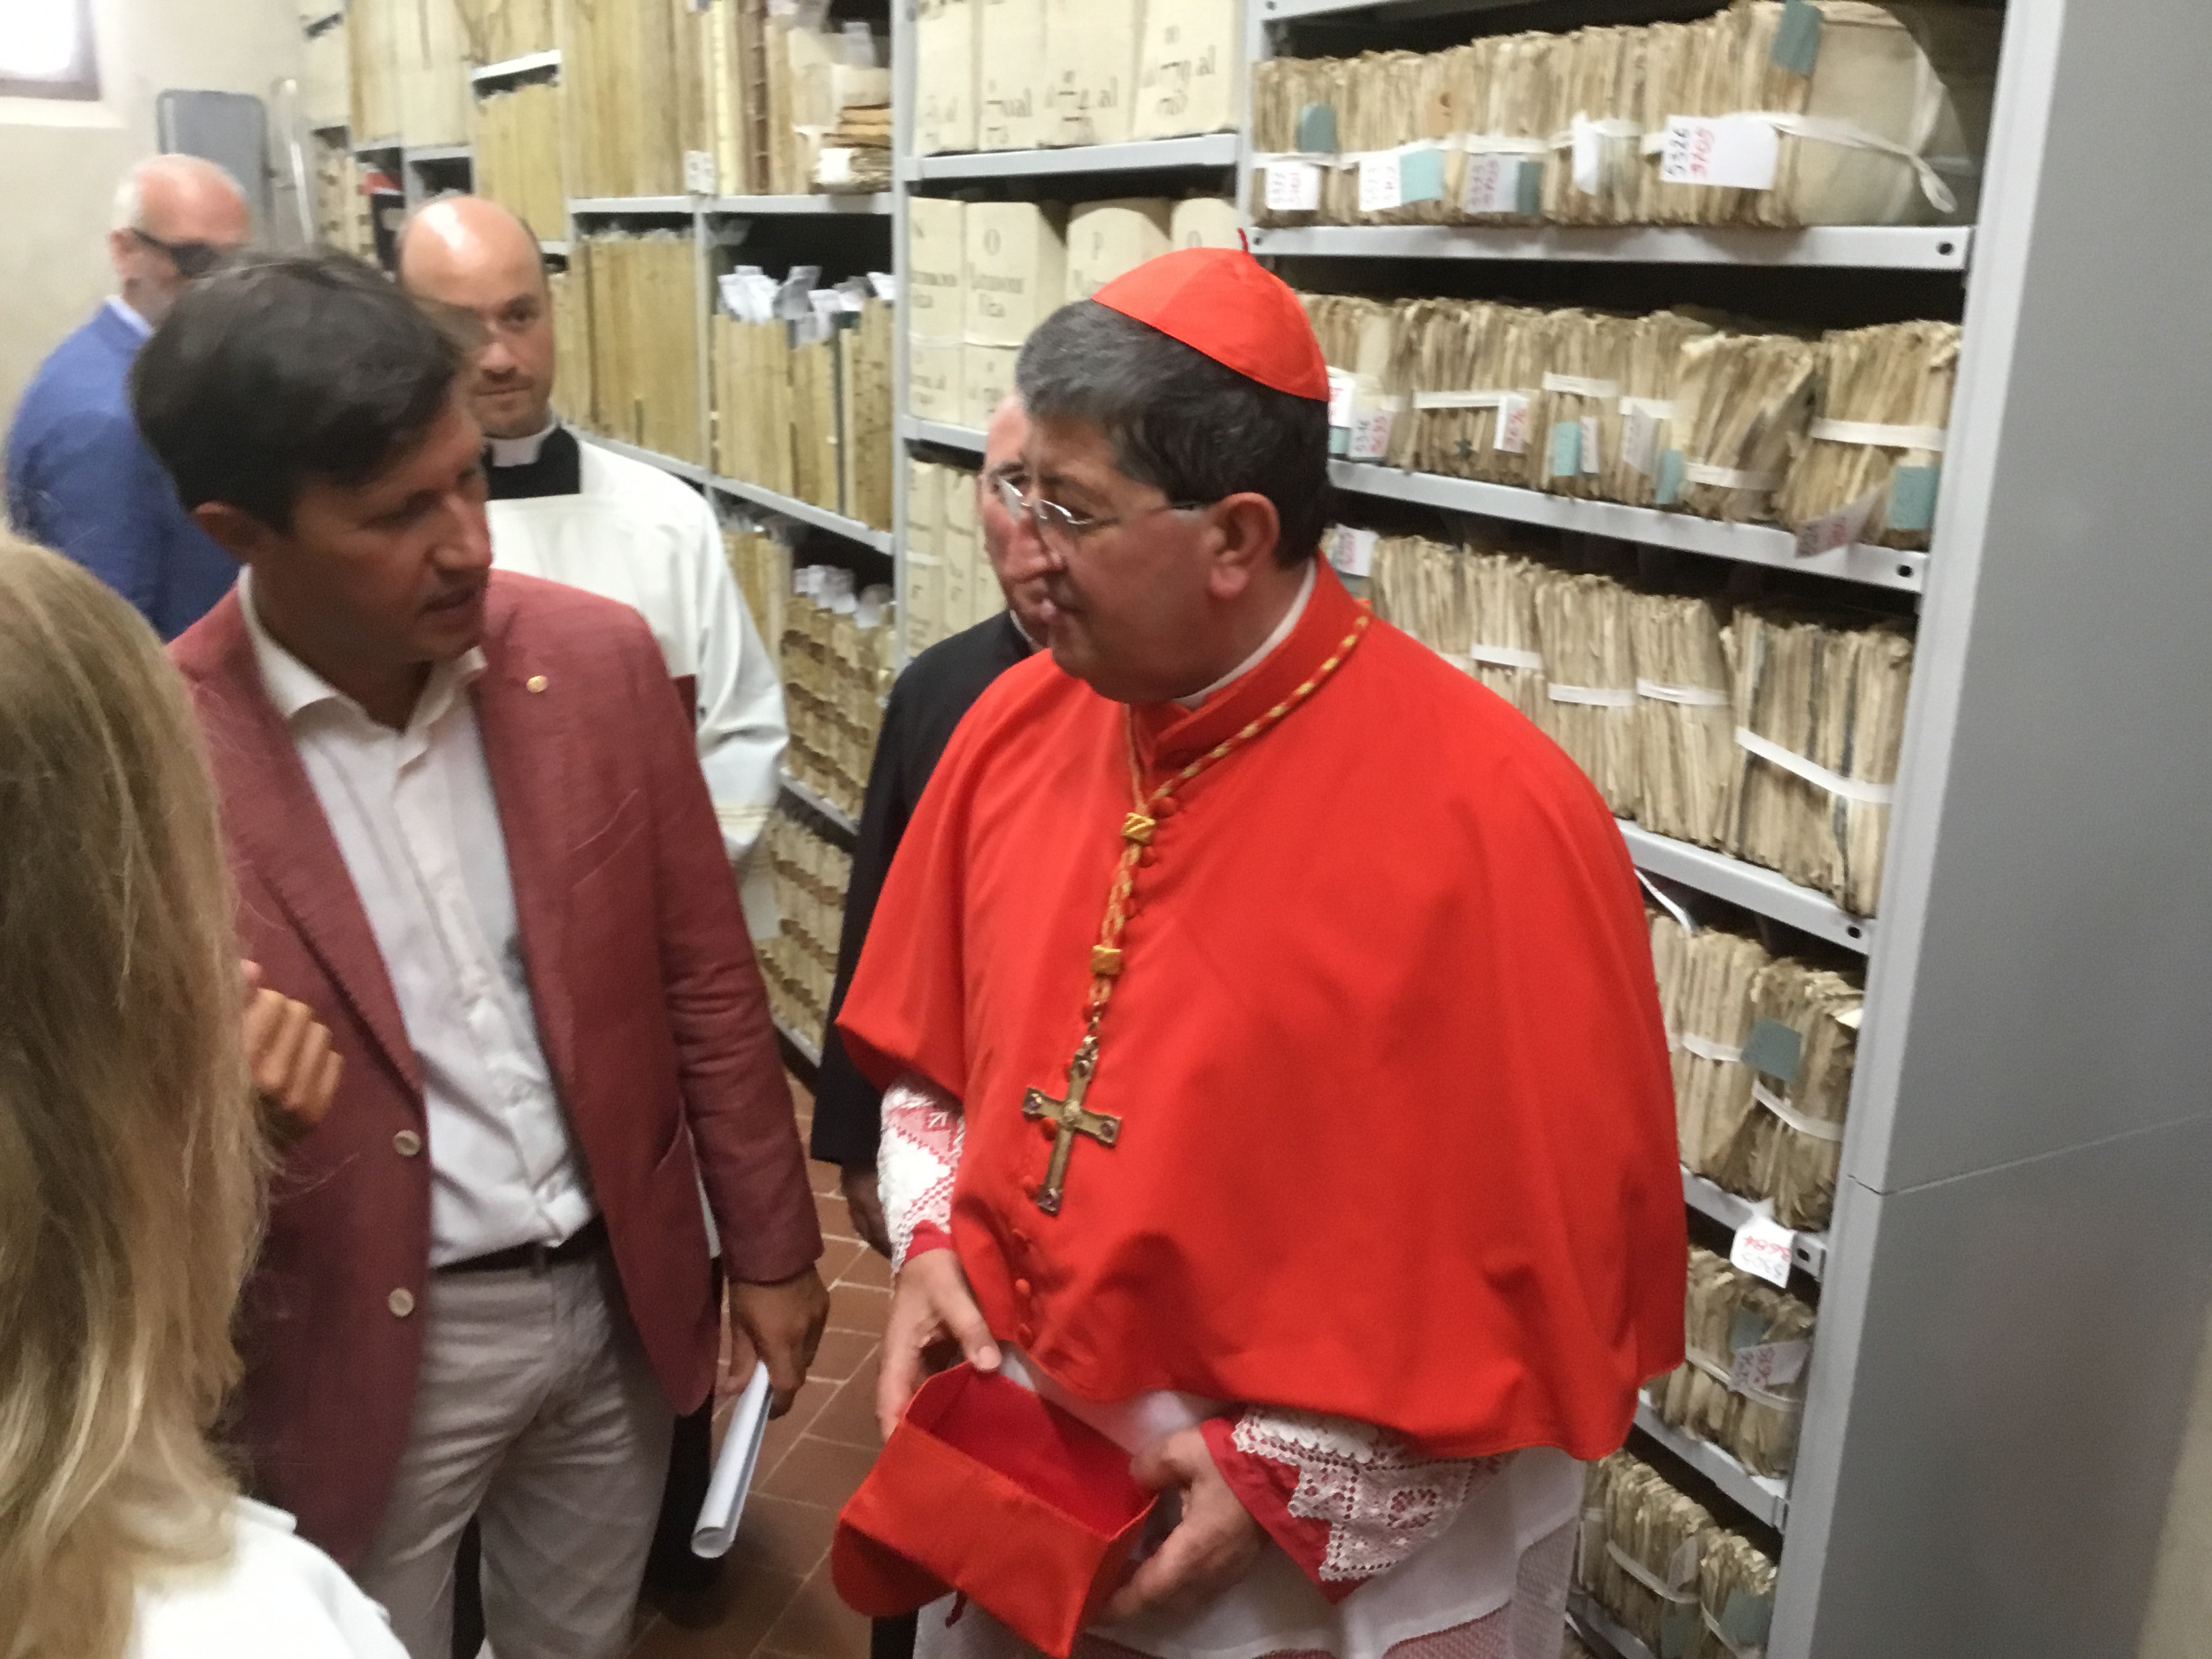 Cardinale Betori nuovo archivio San Lorenzo-Foto Giornalista Franco Mariani (6)